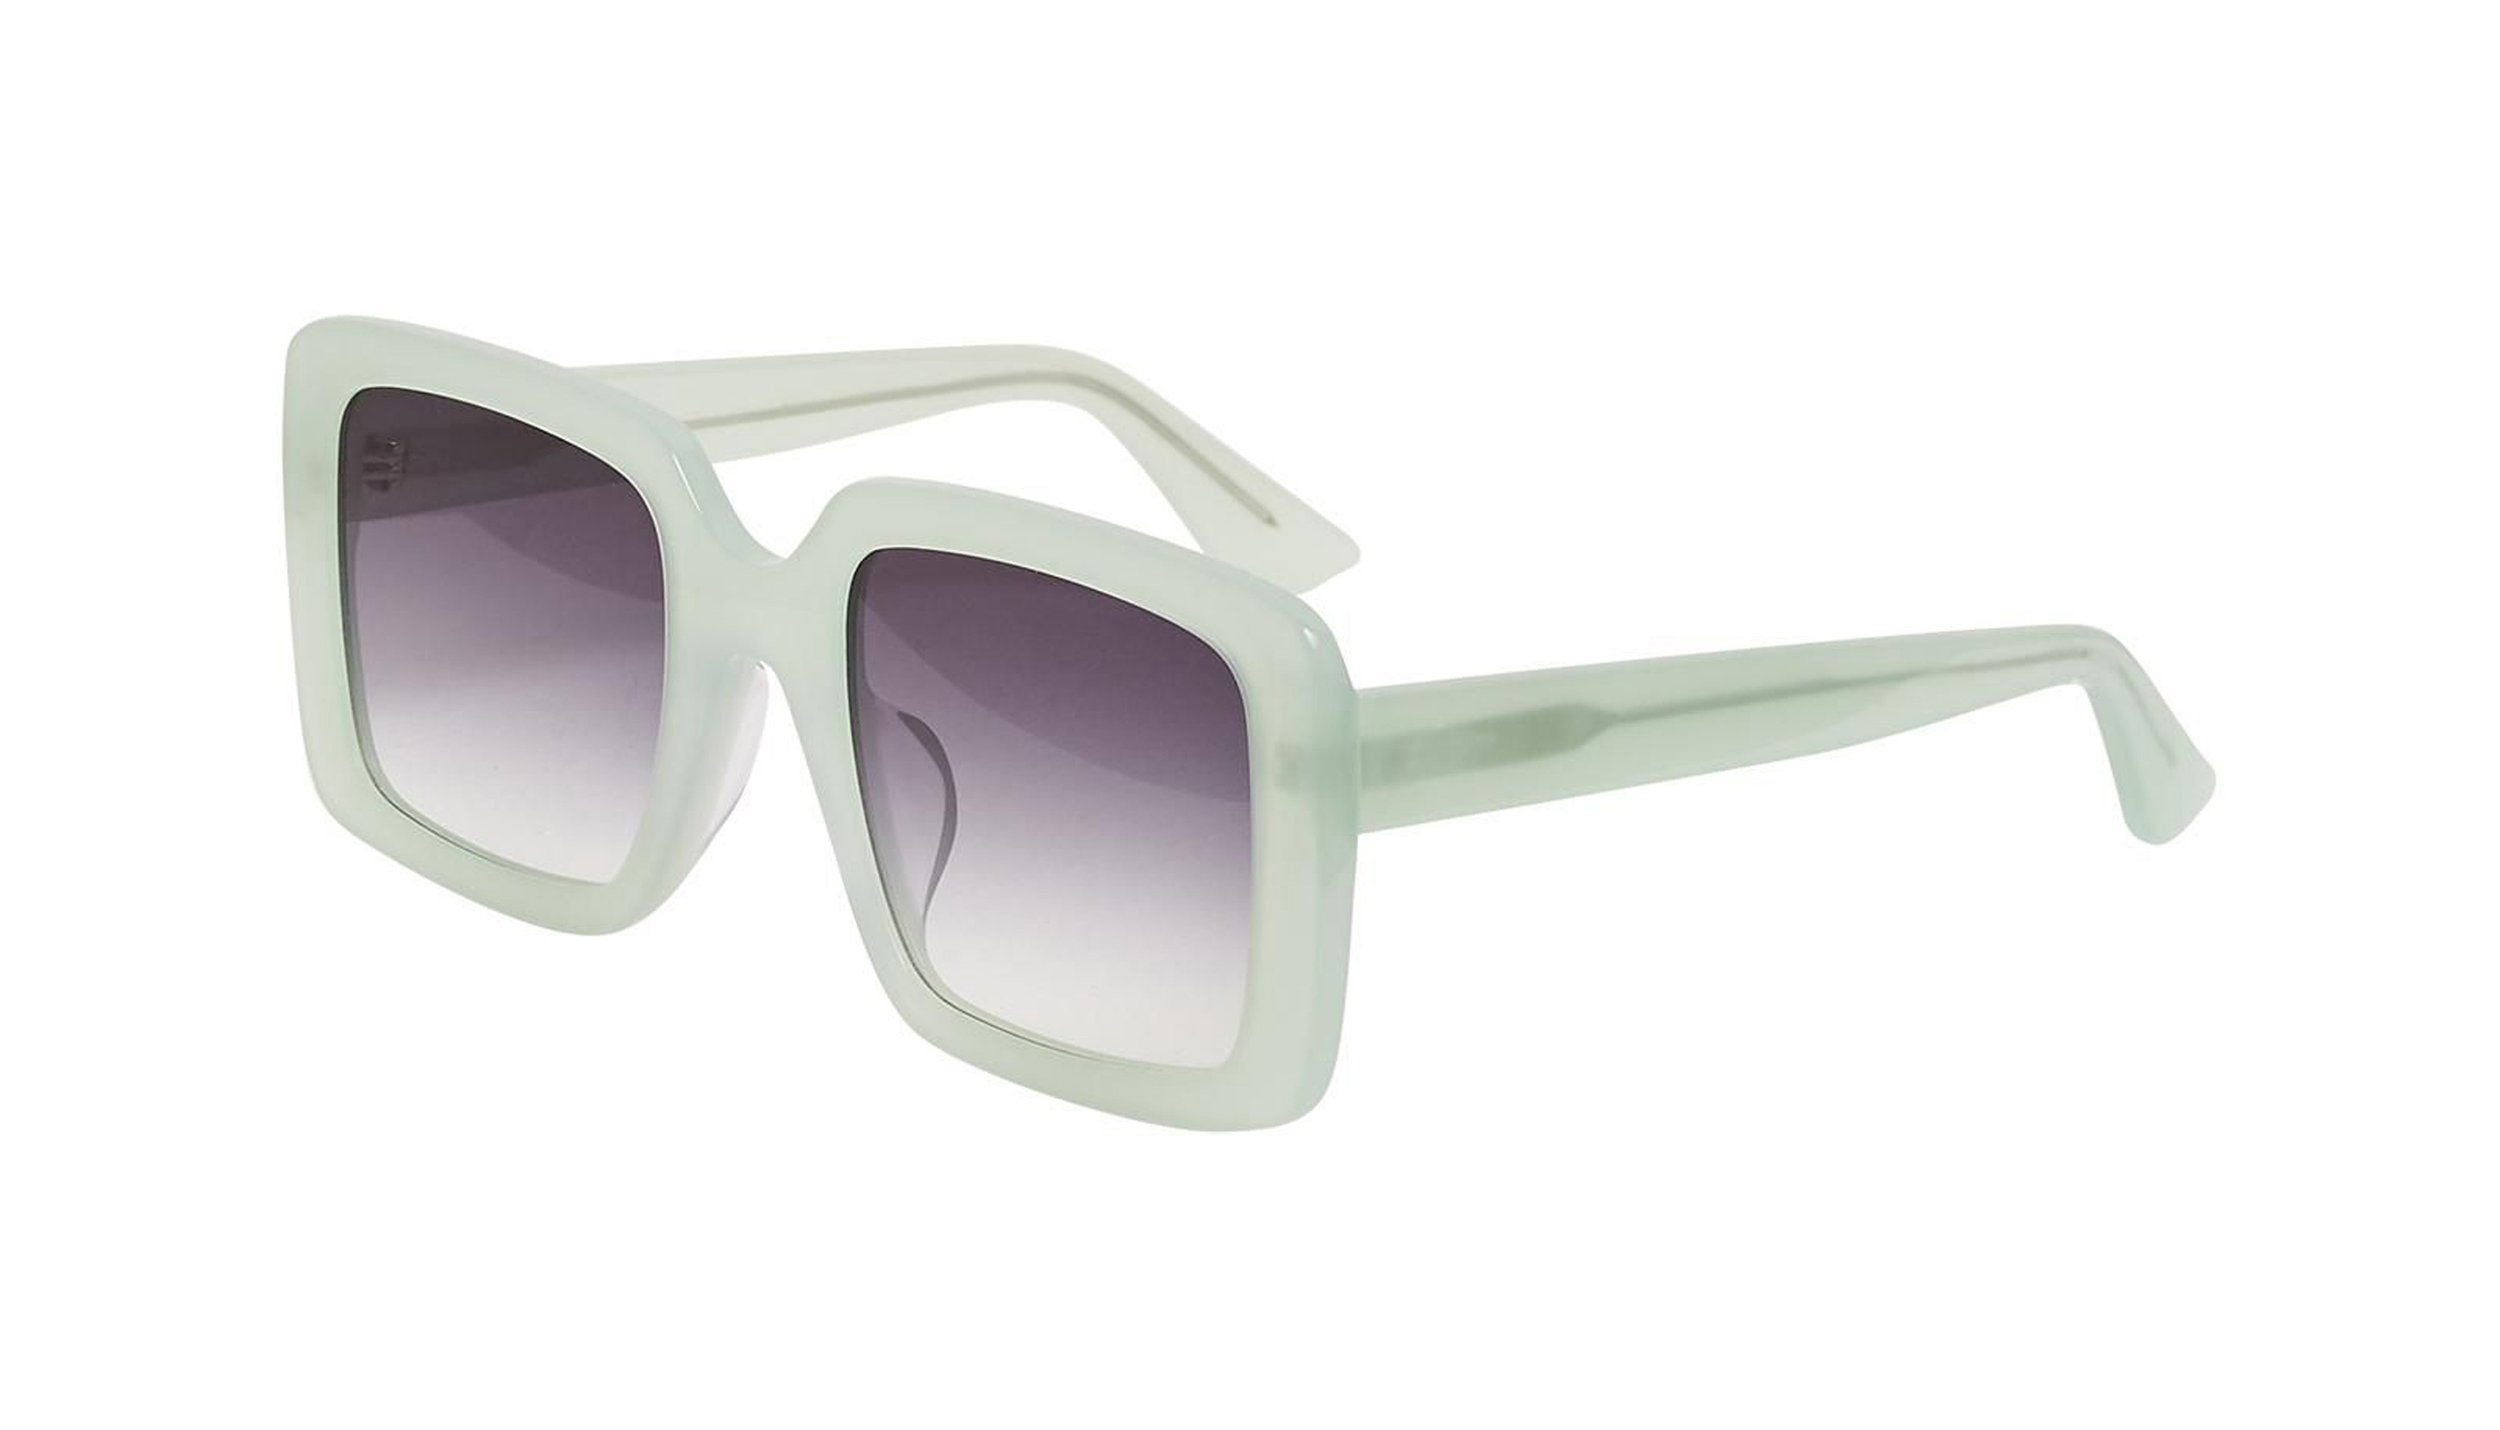 Oliver Bonas Glam Oversized Pastel Green Acetate Sunglasses €60, 